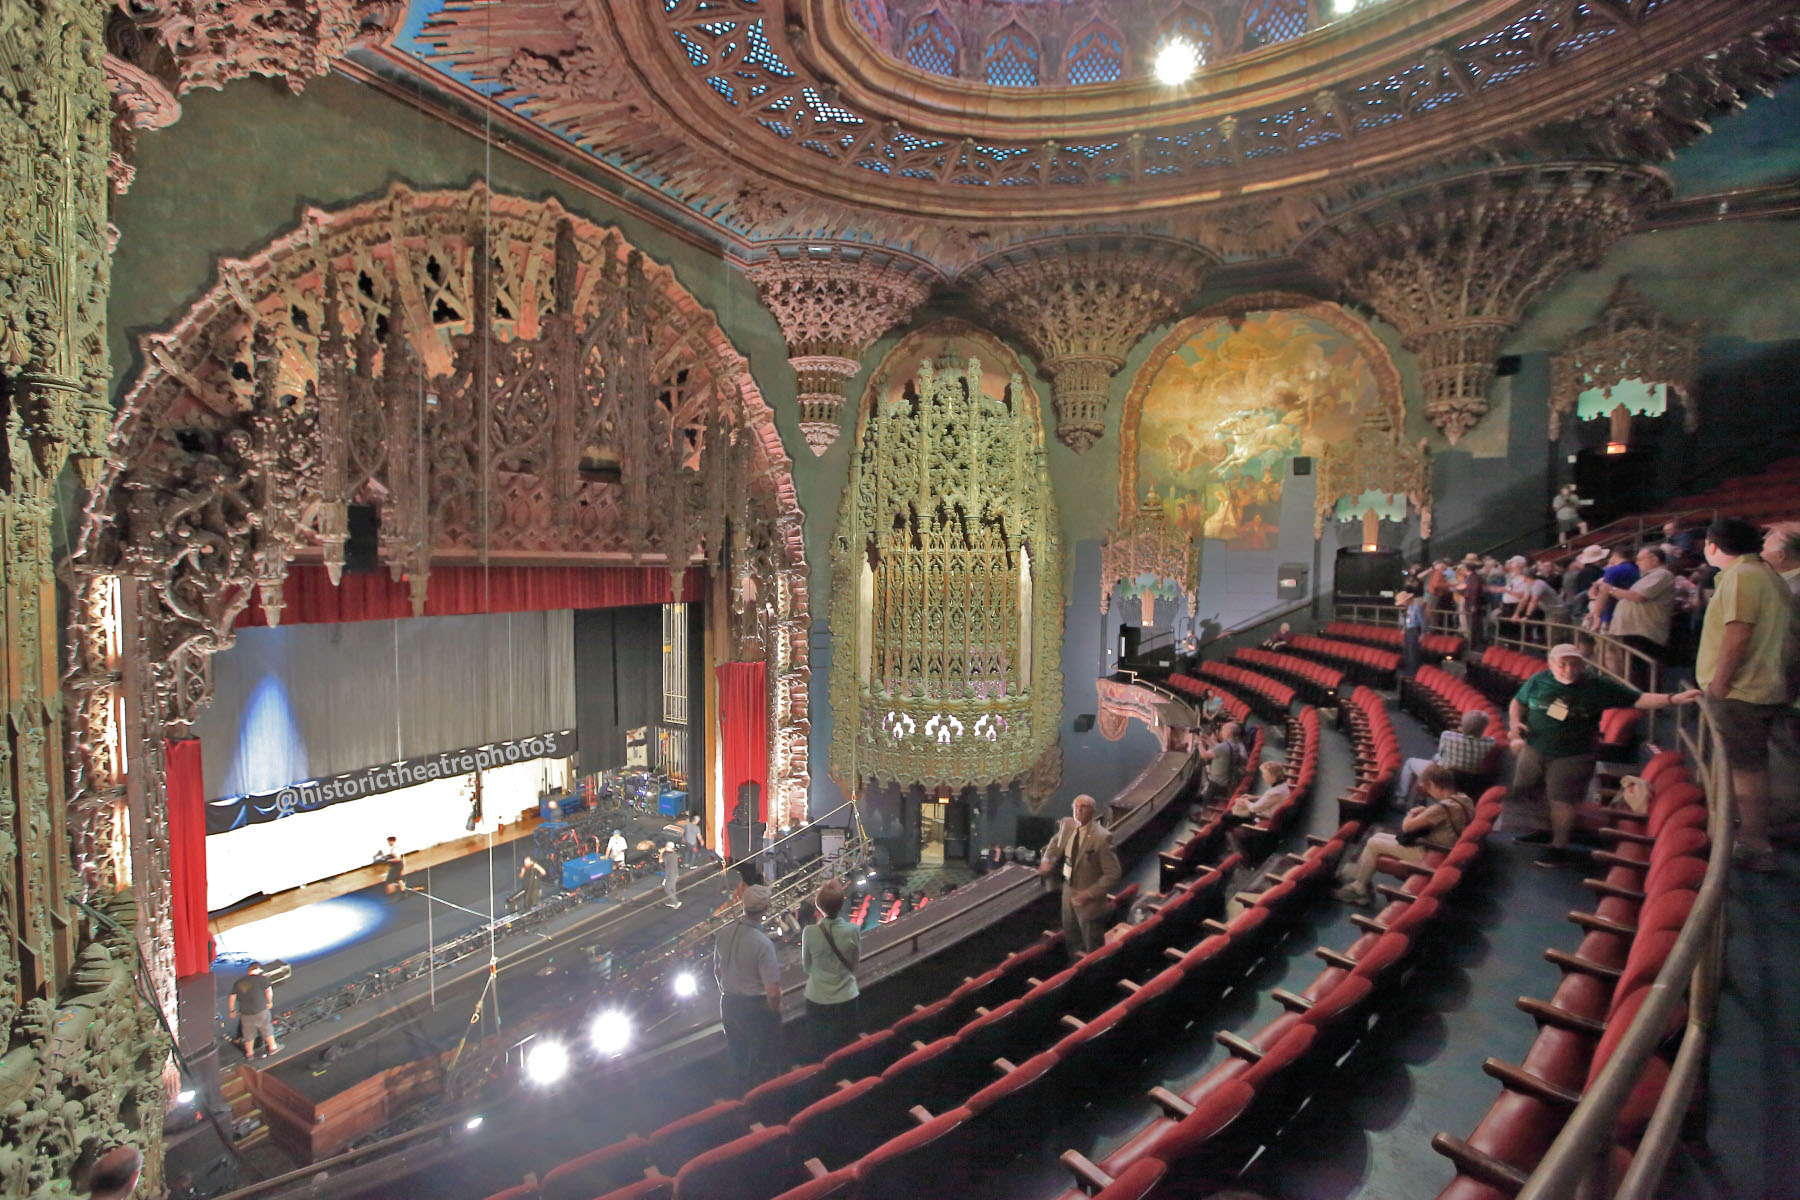 The 1927 Auditorium, designed by architect C. Howard Crane